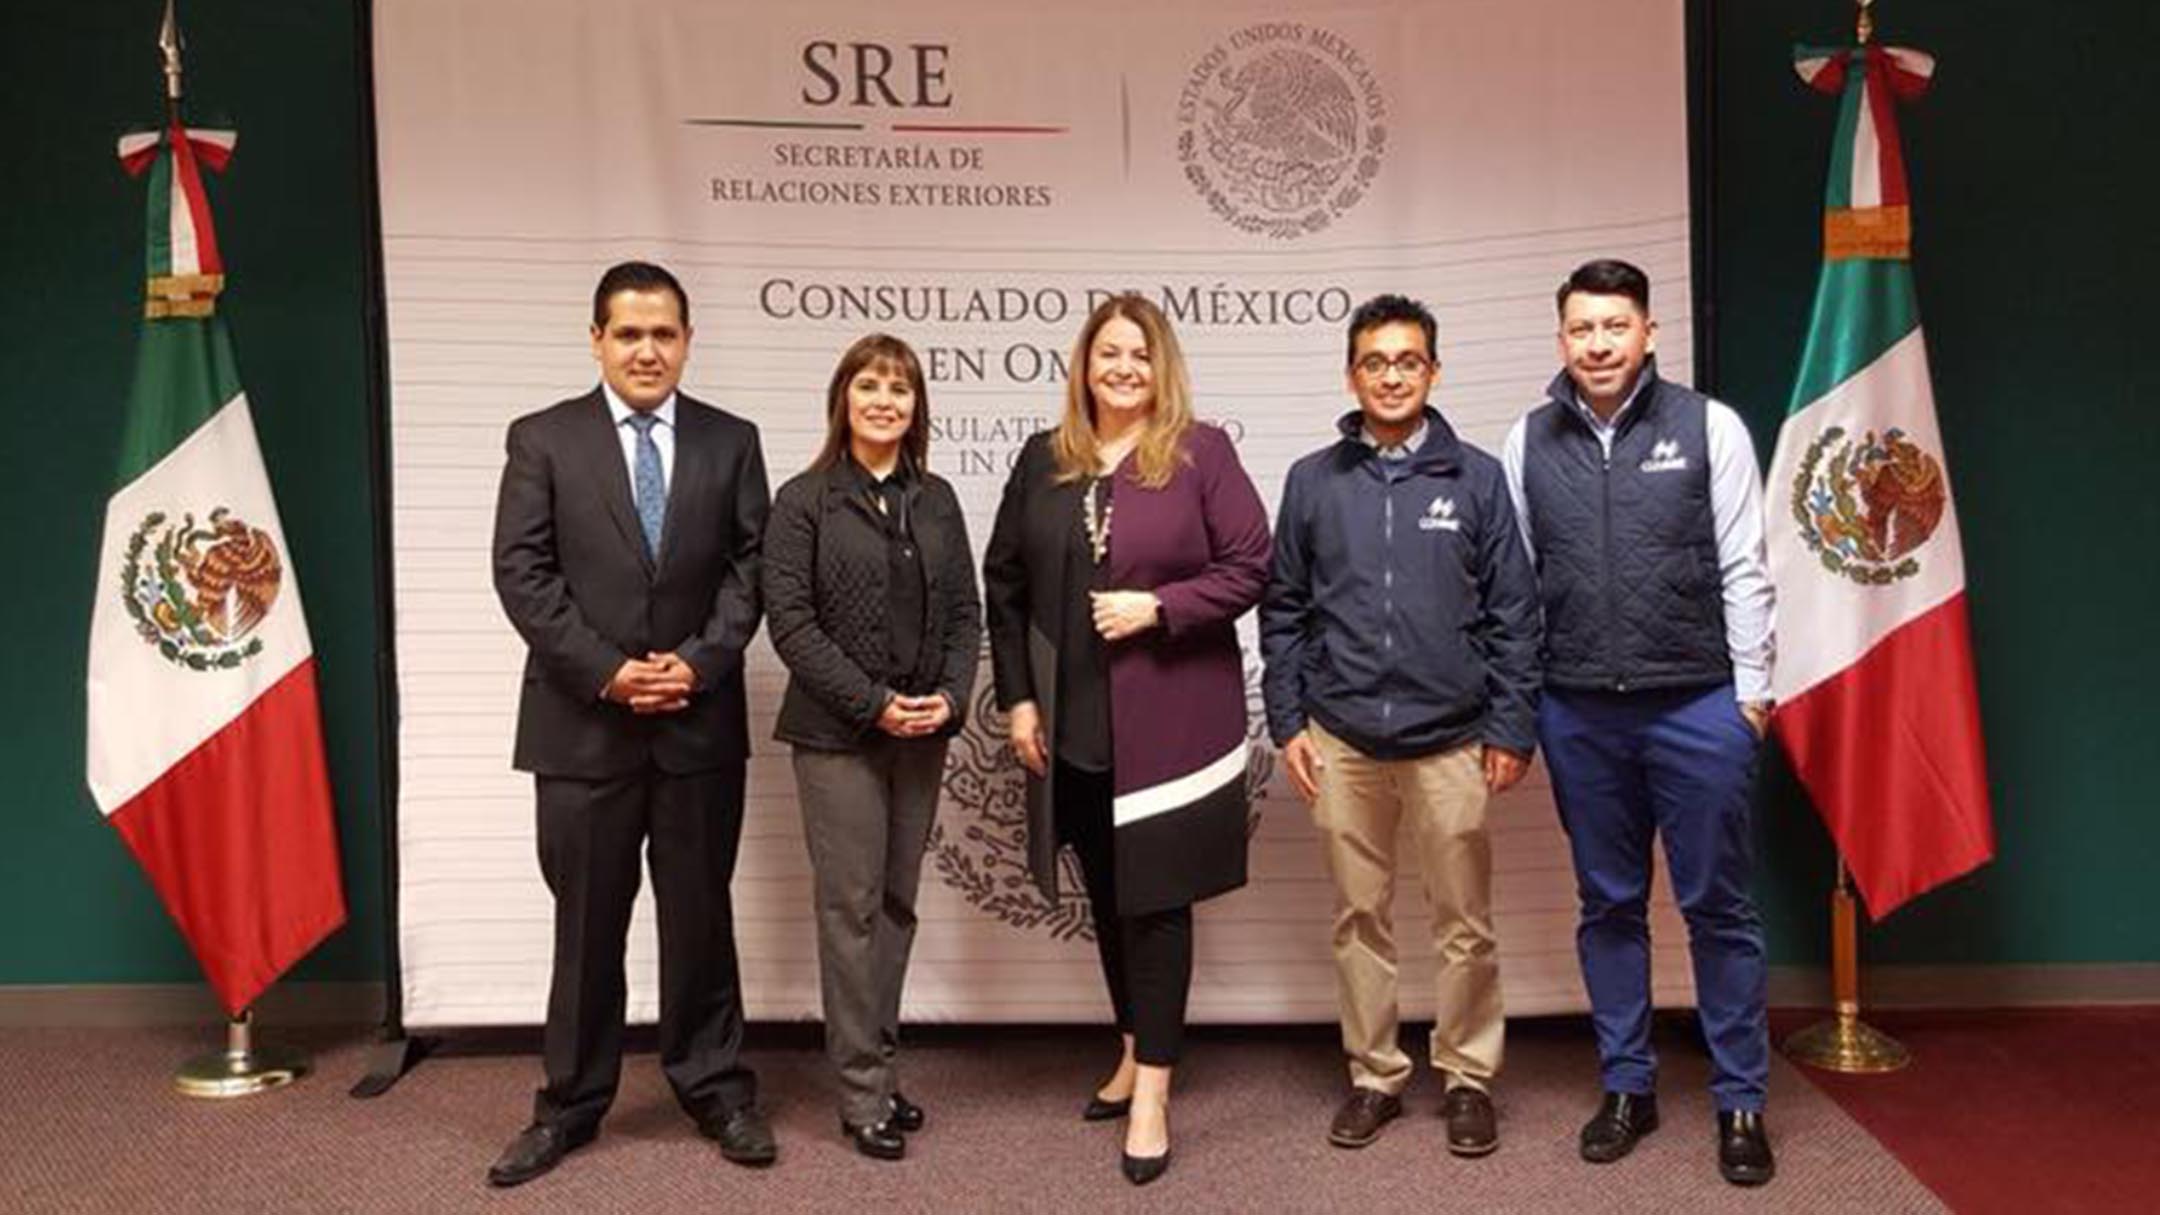 Embajada y consulado de México en Omaha